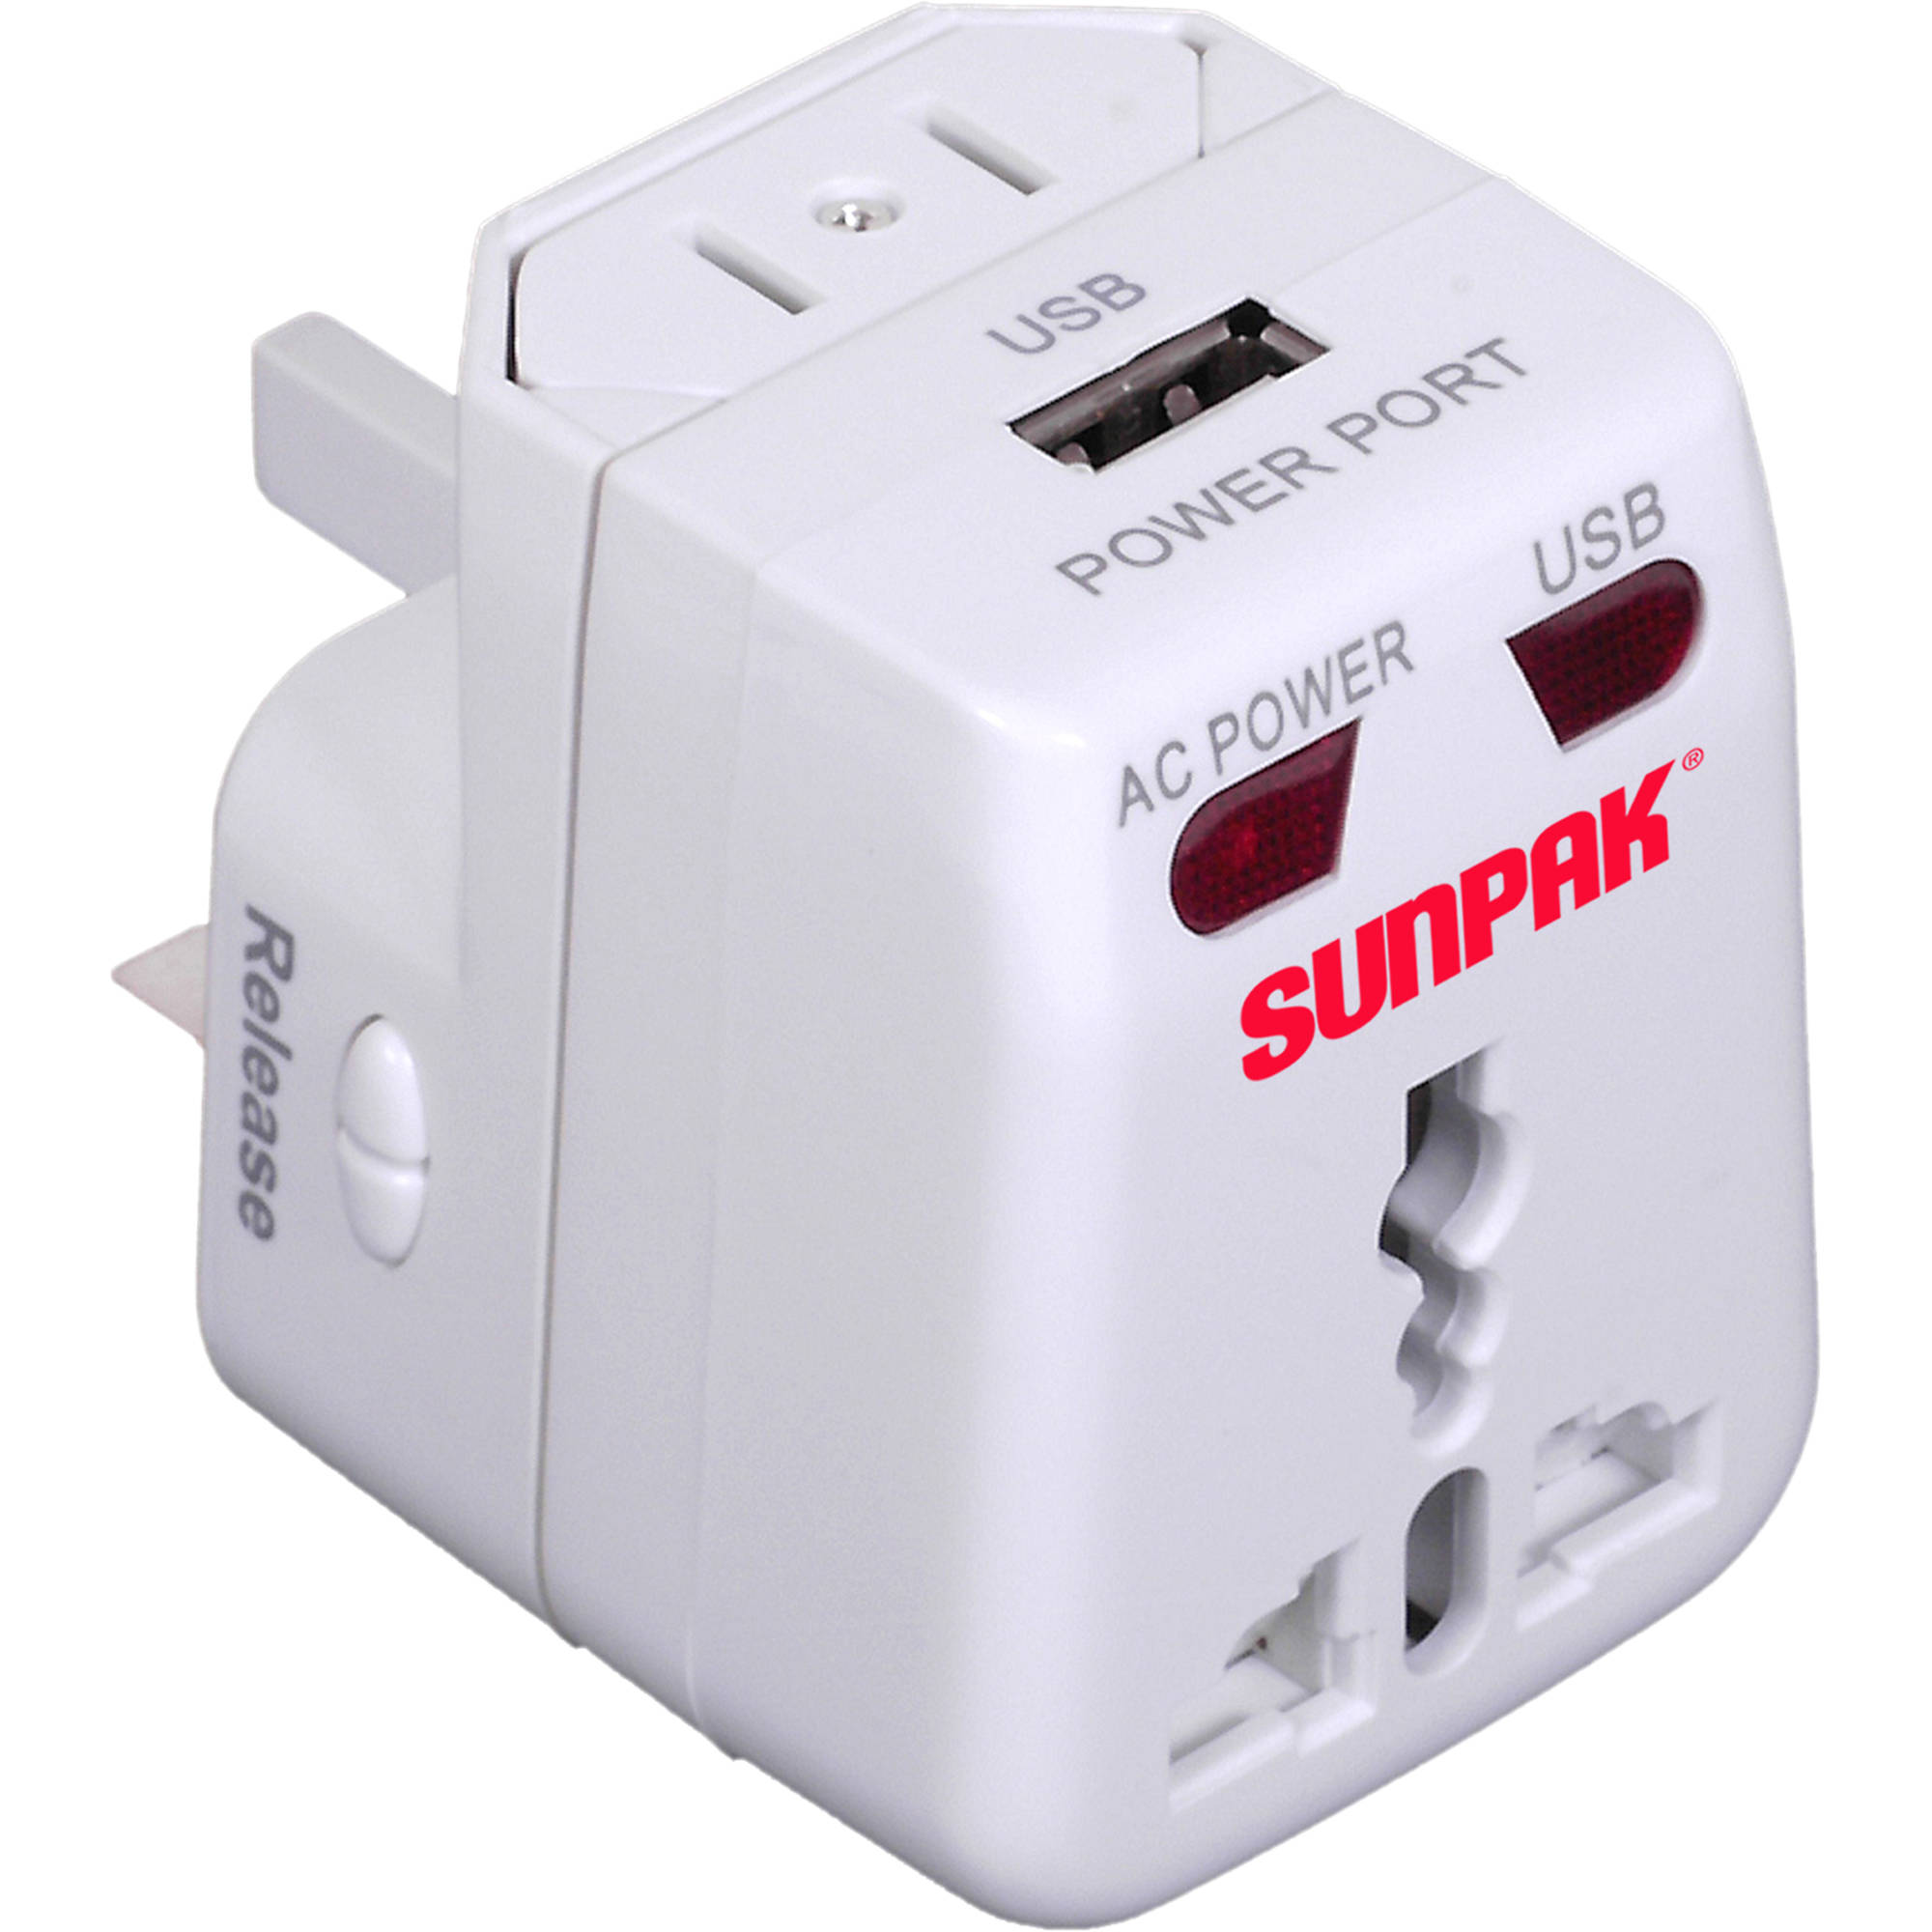 Sunpak Universal Power Adapter (White) TRAVEL-ADAPT B&H Photo